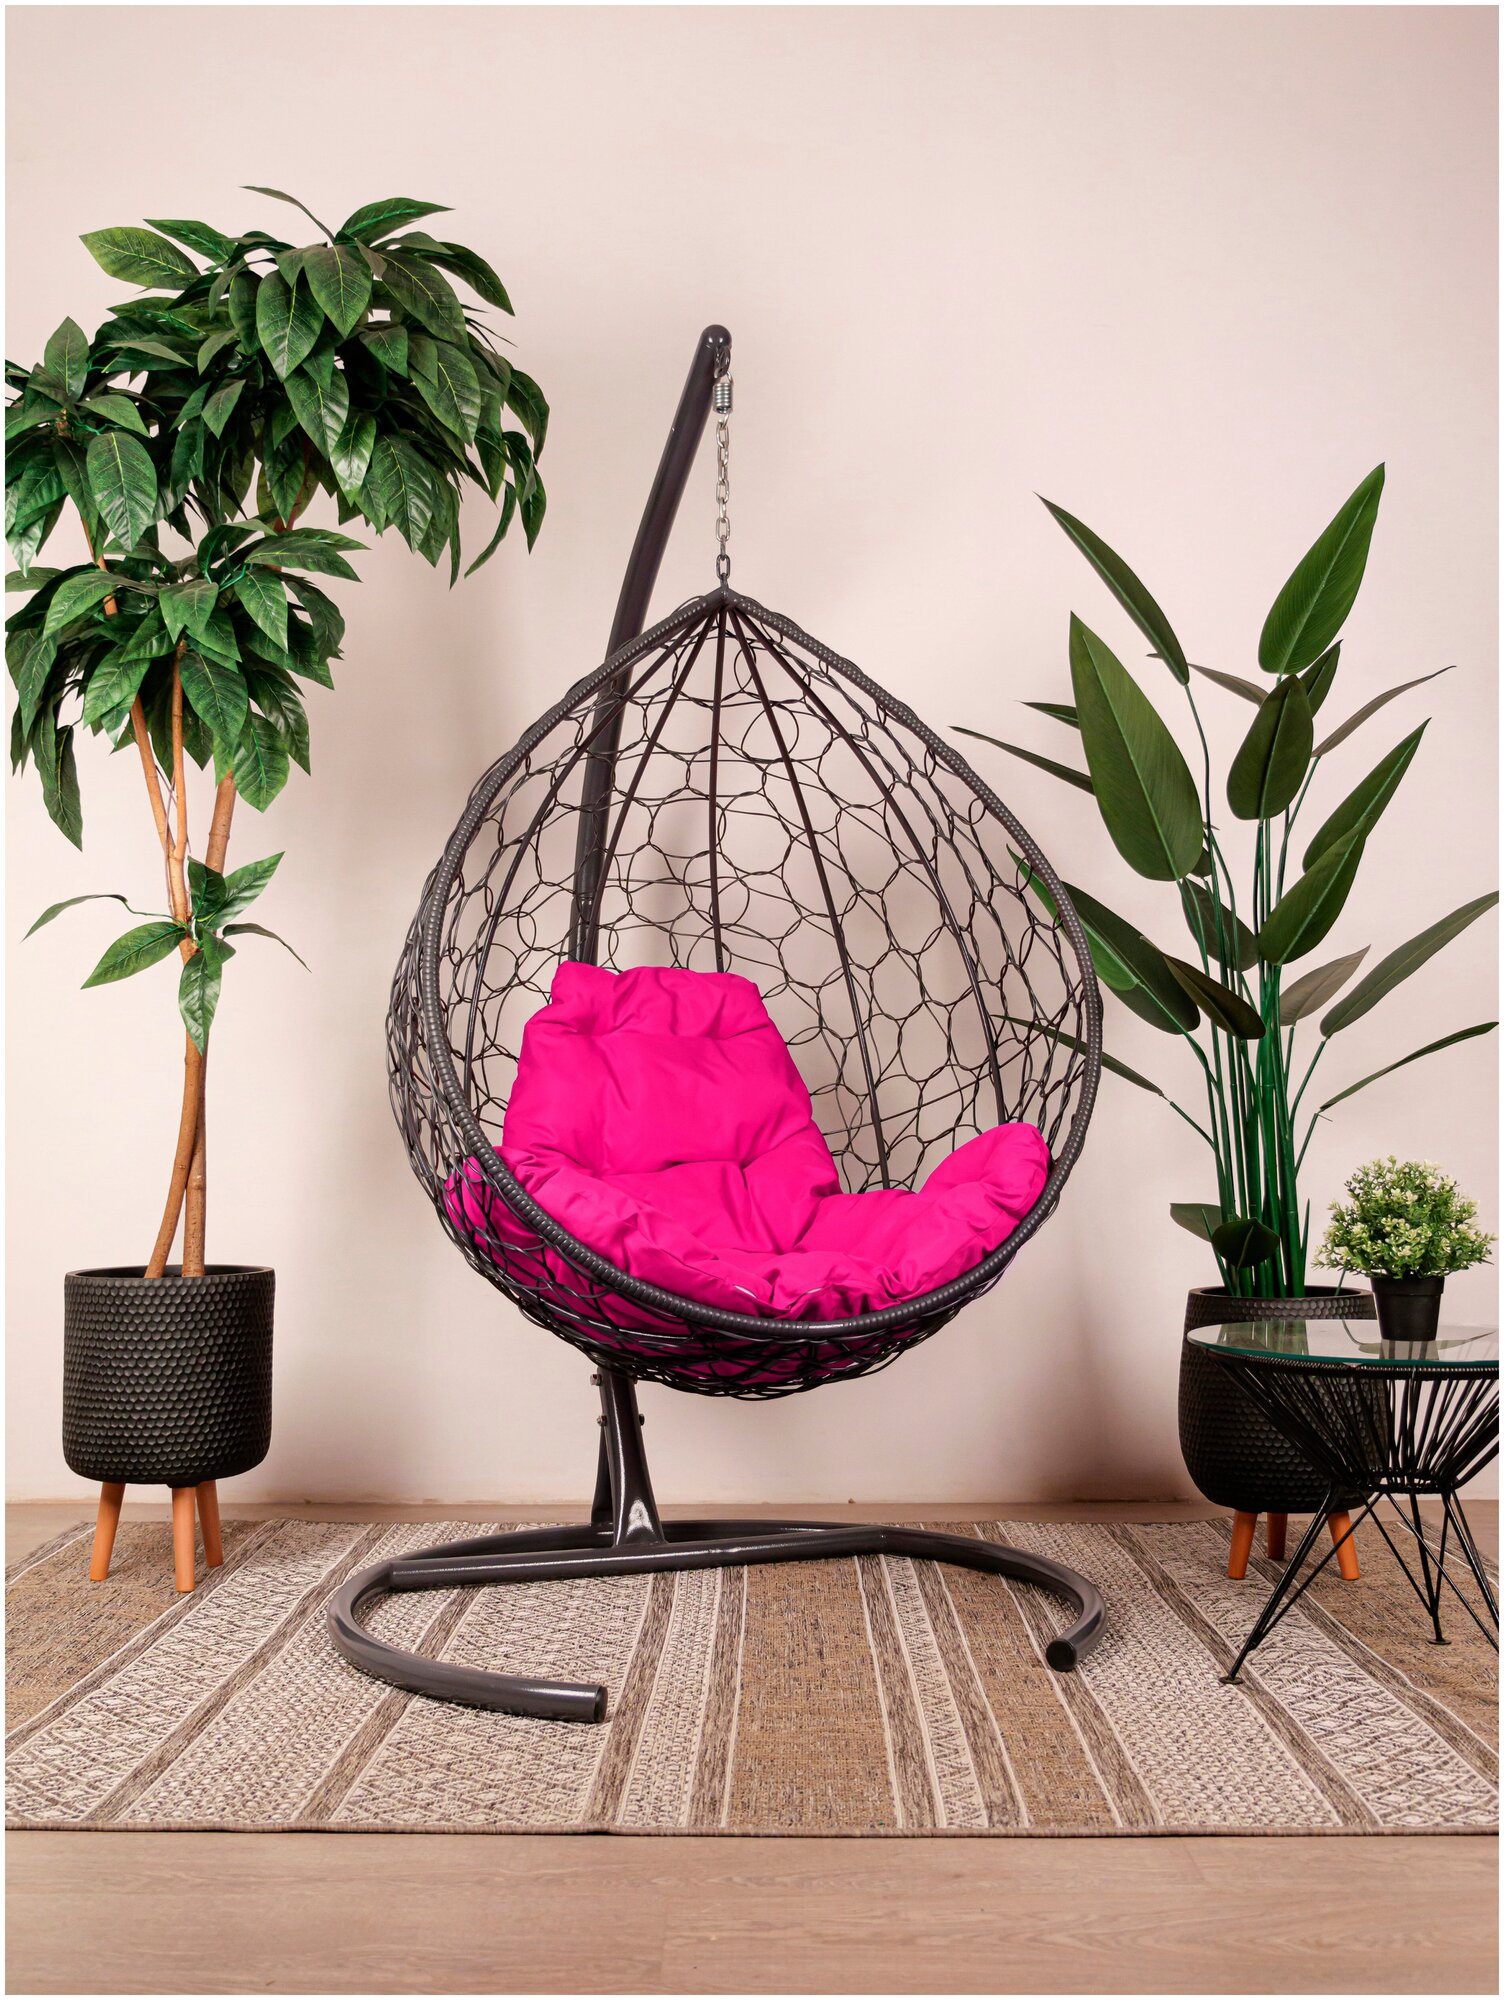 Подвесное кресло M-Group капля ротанг серое, розовая подушка